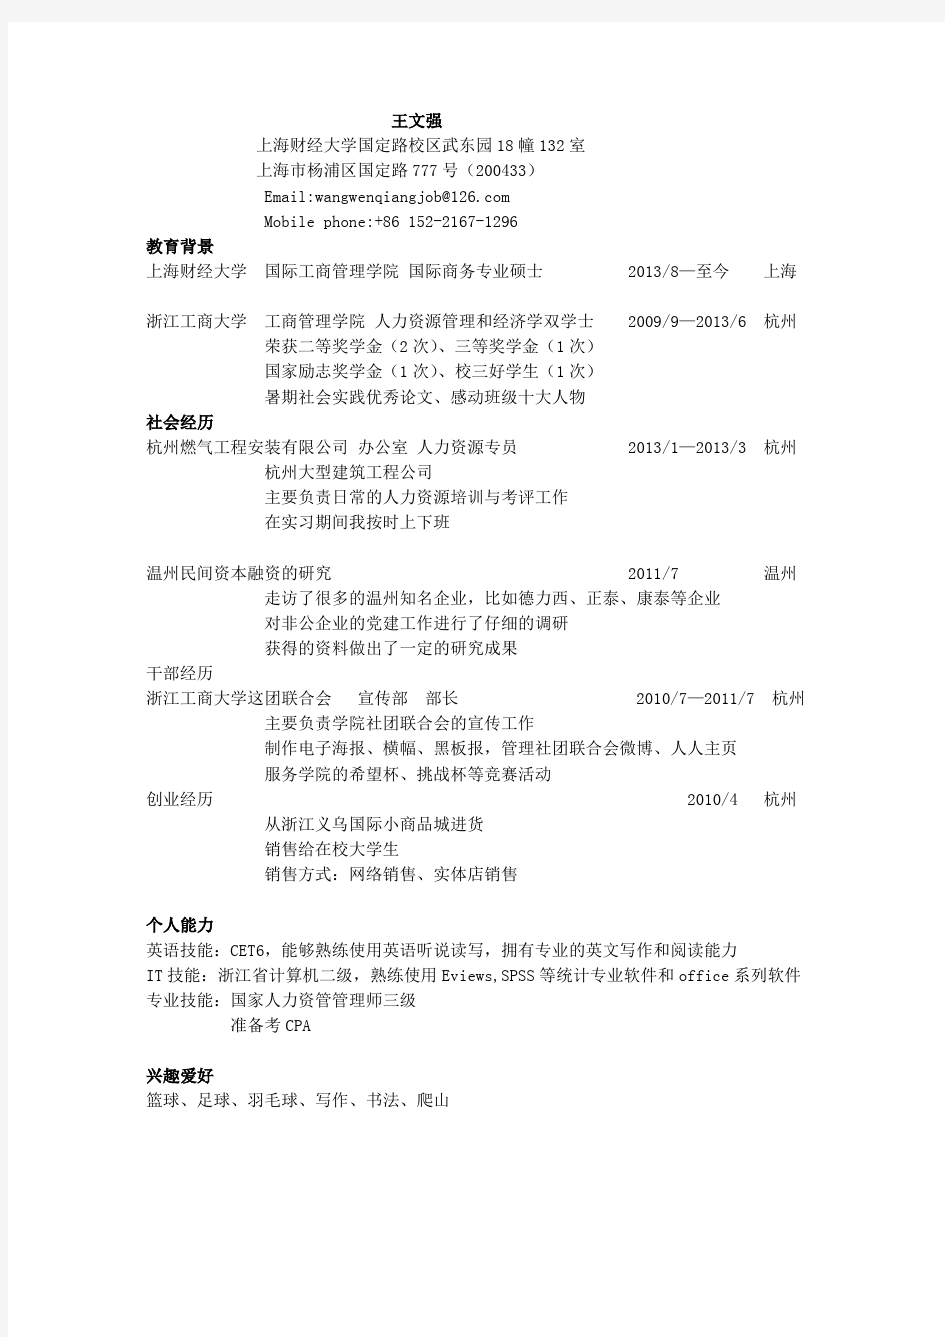 中英文简历-上海财经大学-国际商务硕士-王文强-